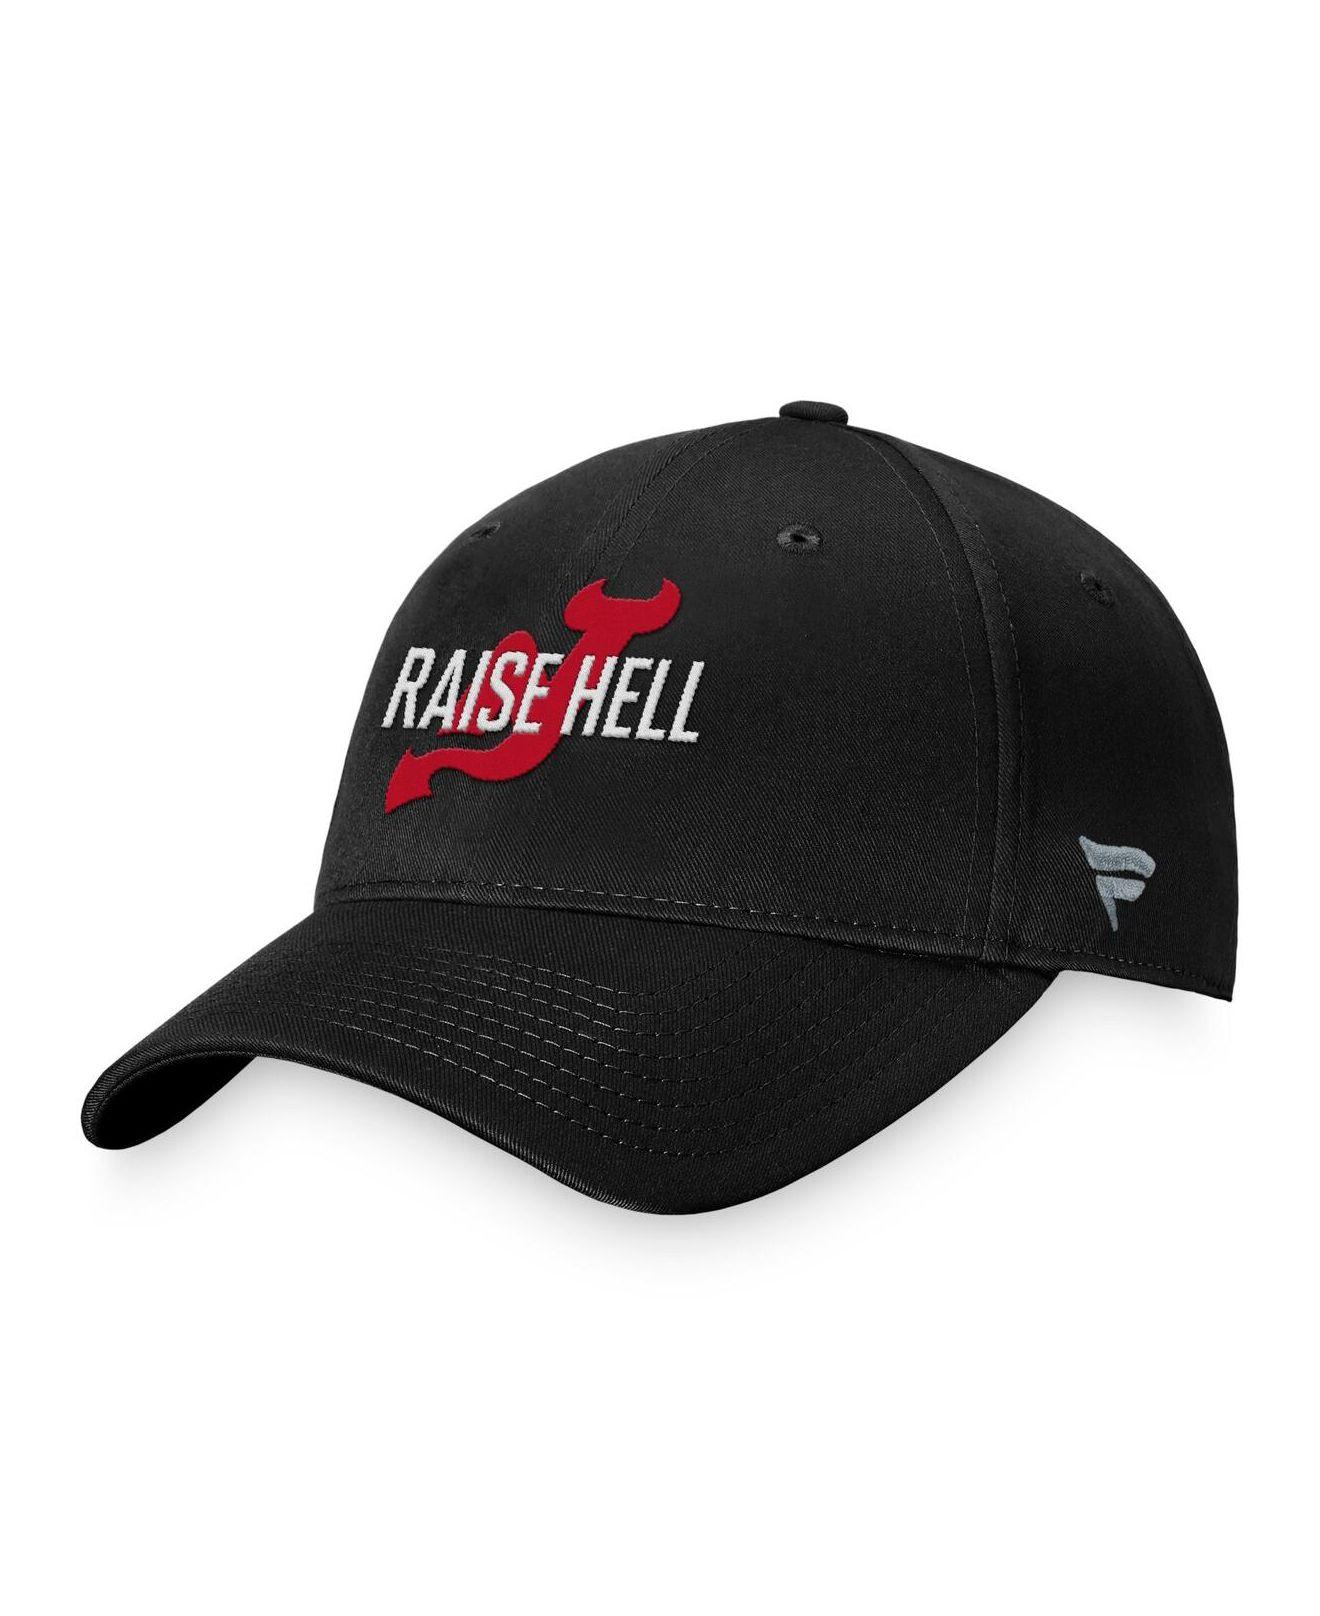 New Jersey Devils NHL Fan Caps & Hats for sale